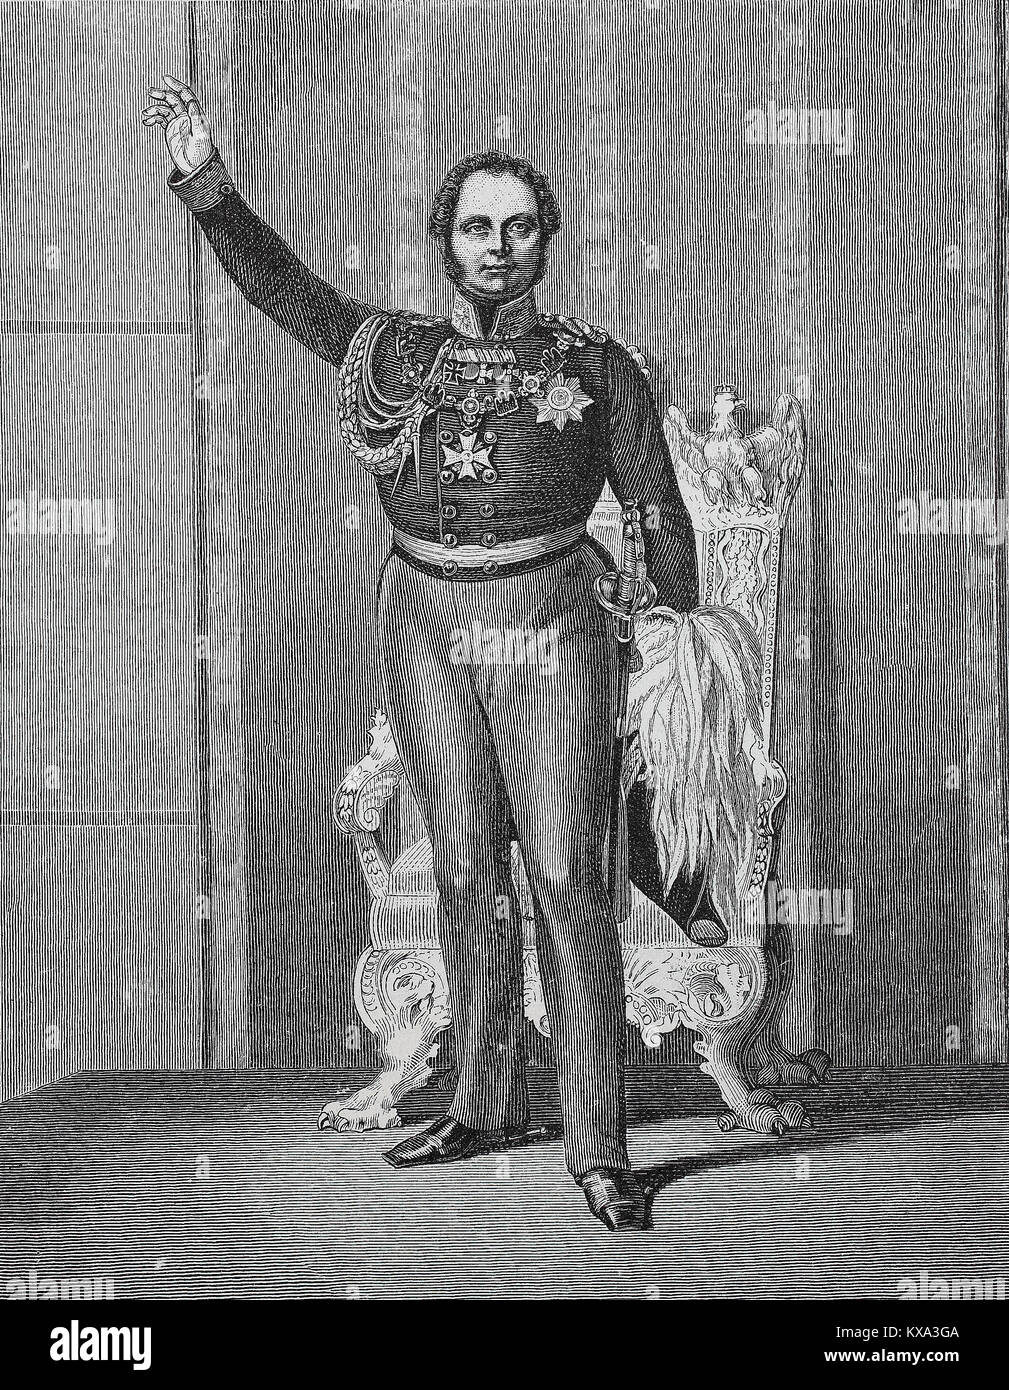 Friedrich Wilhelm IV. von Preußen, Oktober 15, 1795 - 2. Januar 1861, bei der Eröffnung des ersten Vereinigten Ernährung am 11. März 1847, digital verbesserte Reproduktion aus einem original Holzschnitt oder Illustration aus dem Jahr 1880 Stockfoto